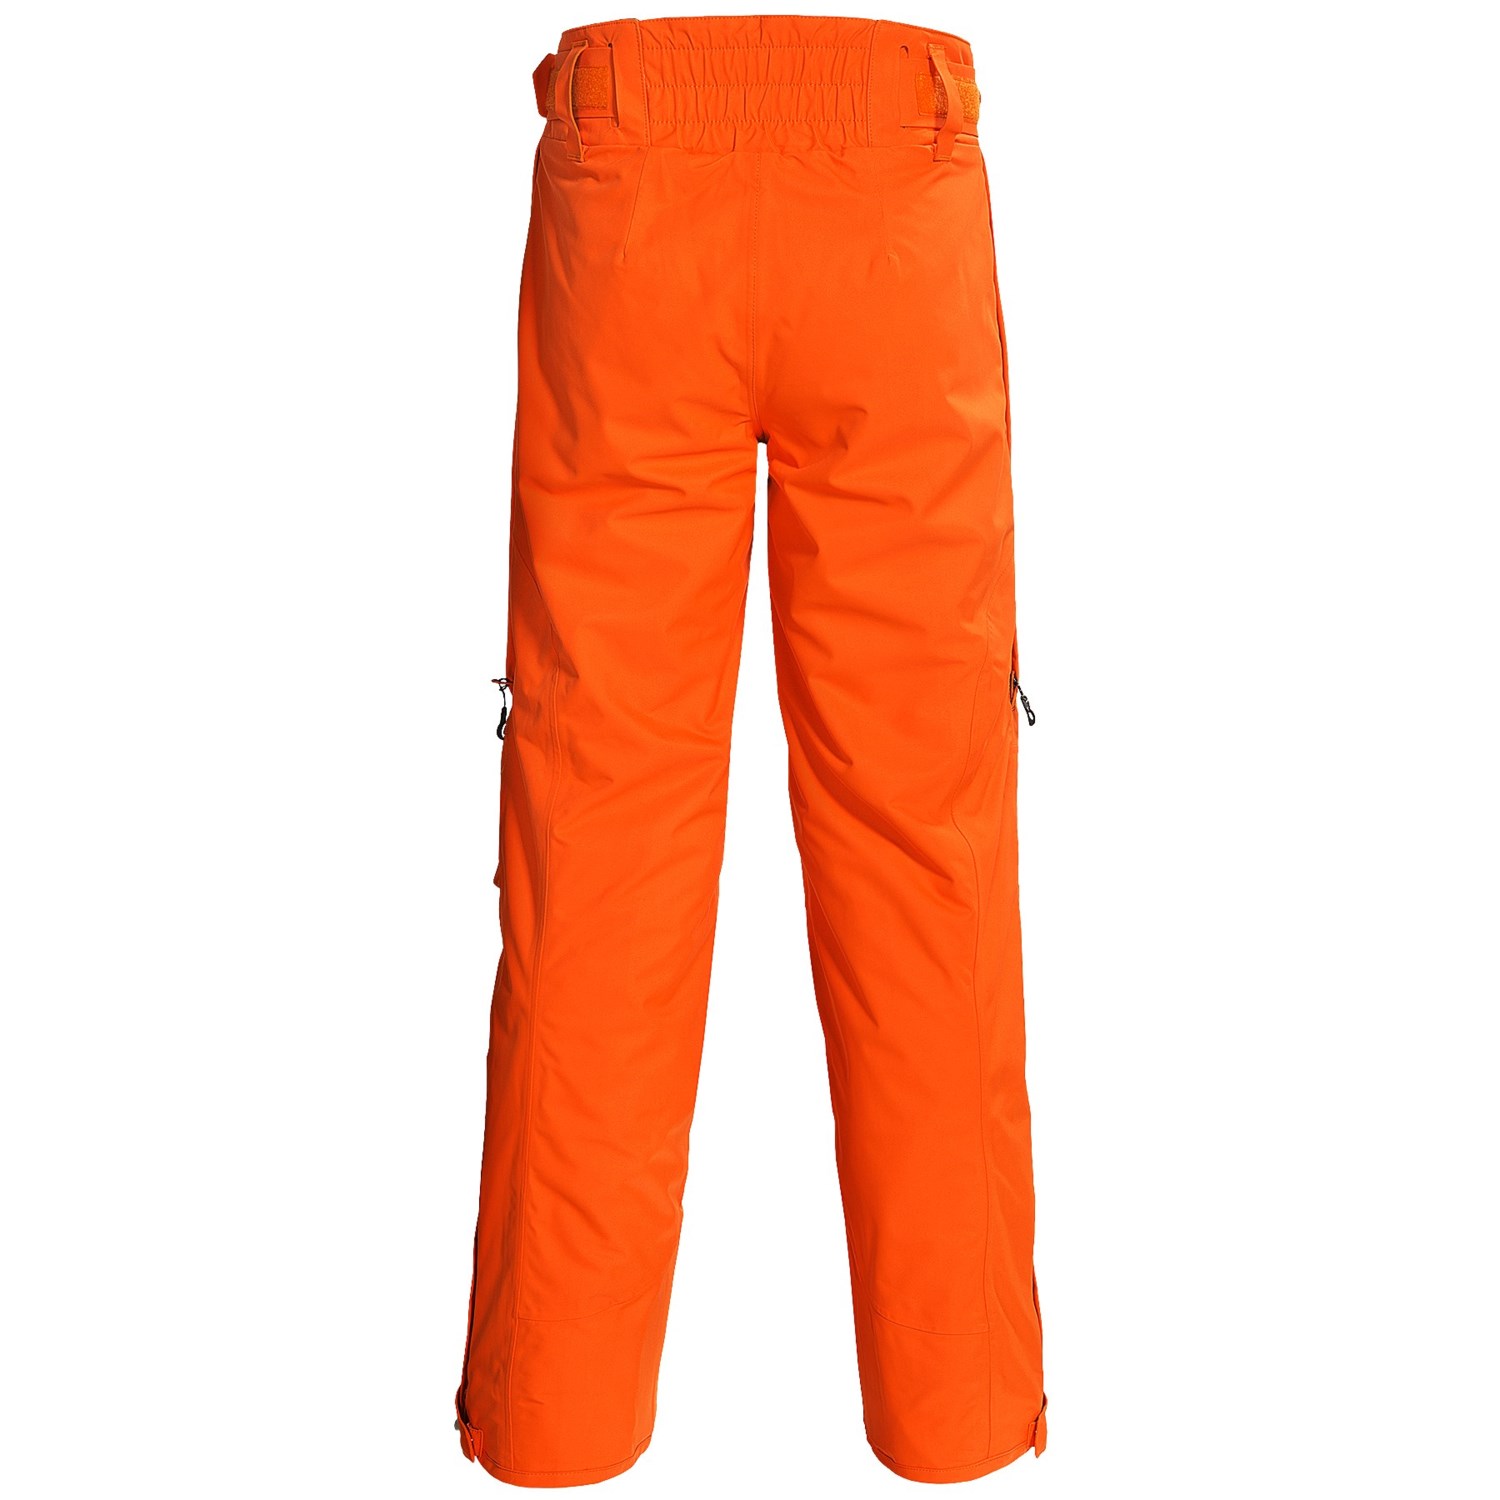 Phenix Sogne Ski Pants (For Men) 7886K - Save 80%